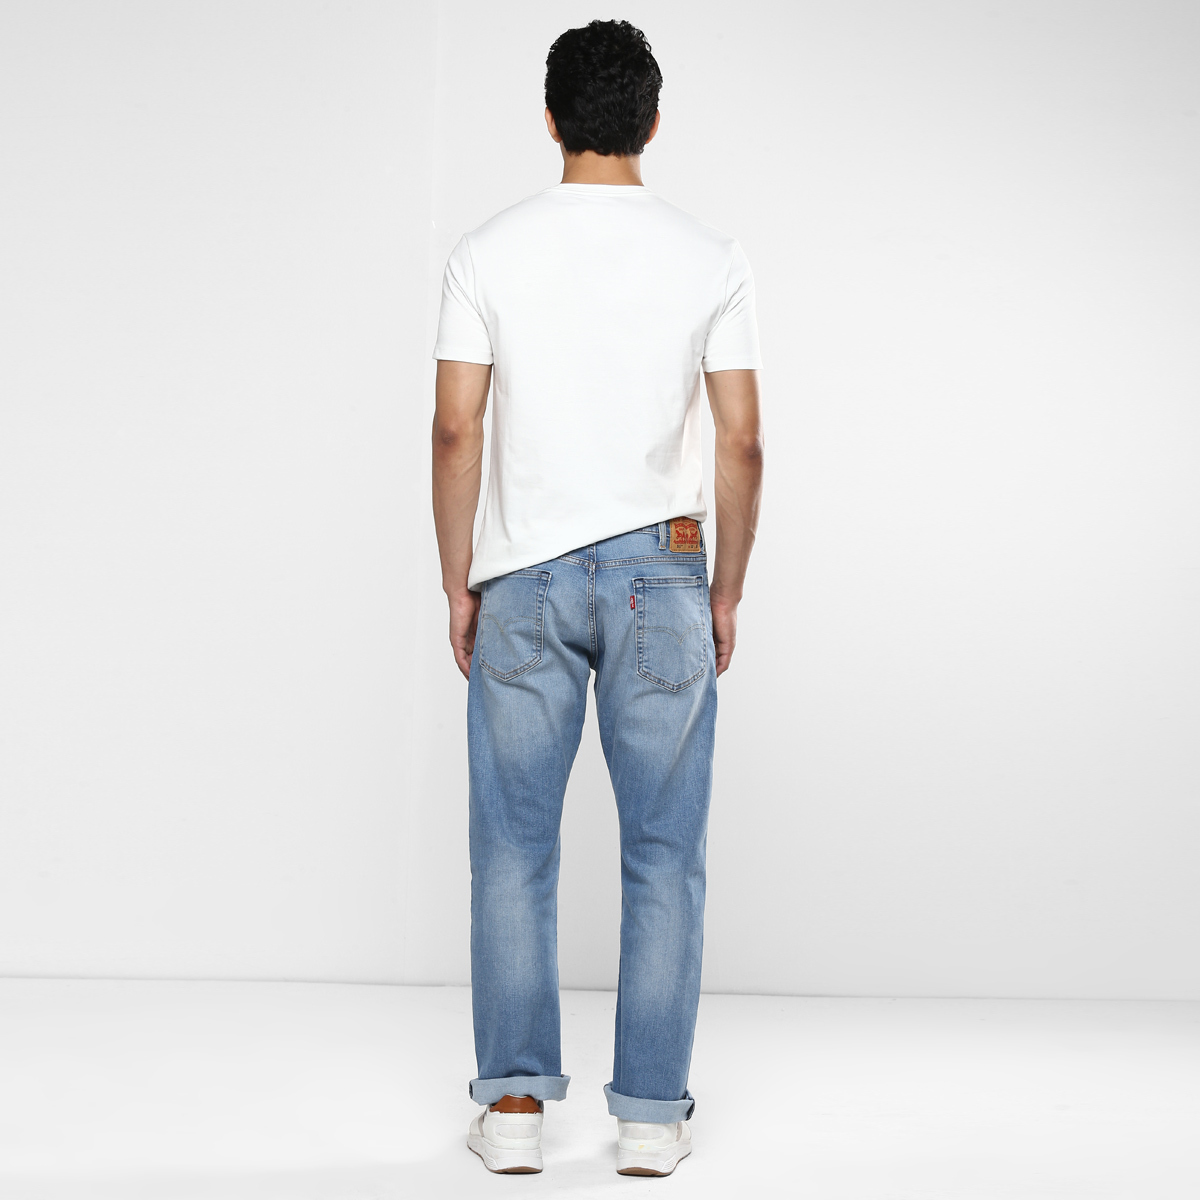 LEVIS MEN Single Length Jeans 16382-0007 Blue 36